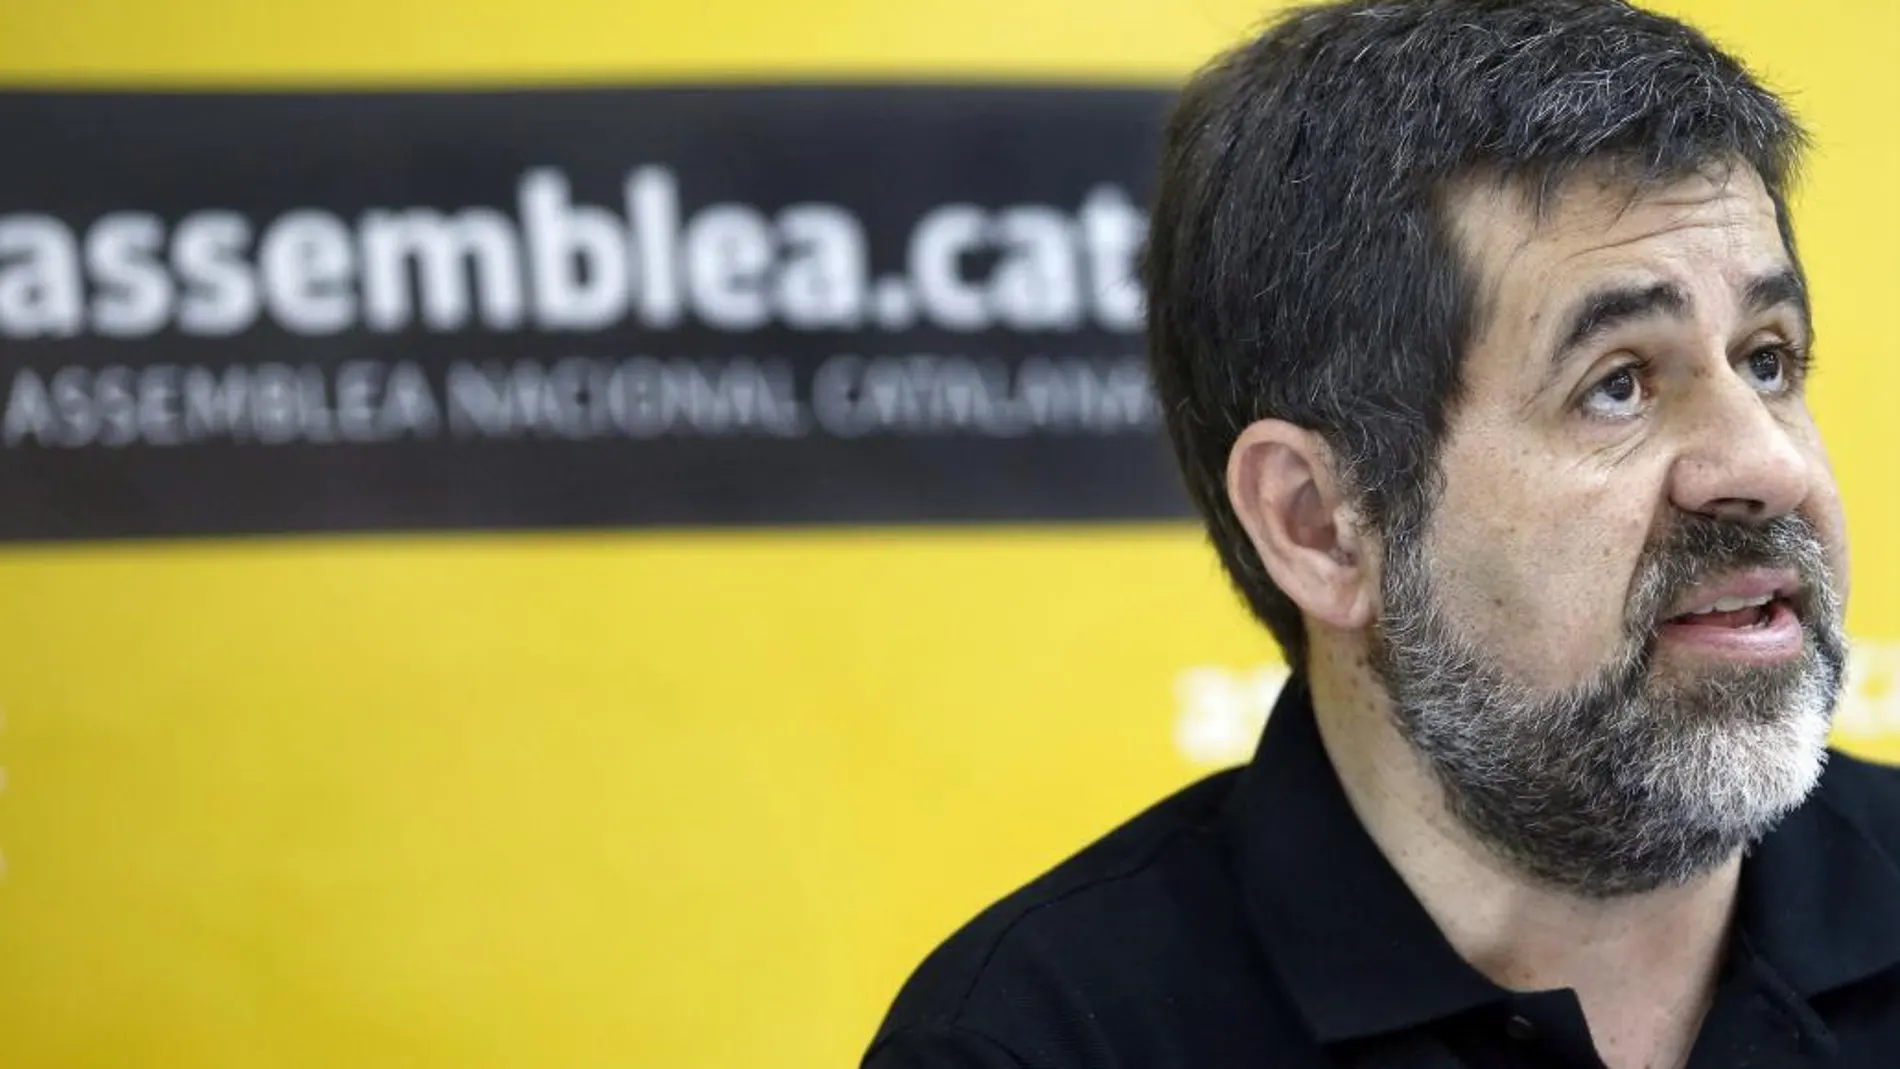 El presidente de la Assemblea Nacional de Catalunya (ANC), Jordi Sanchez,